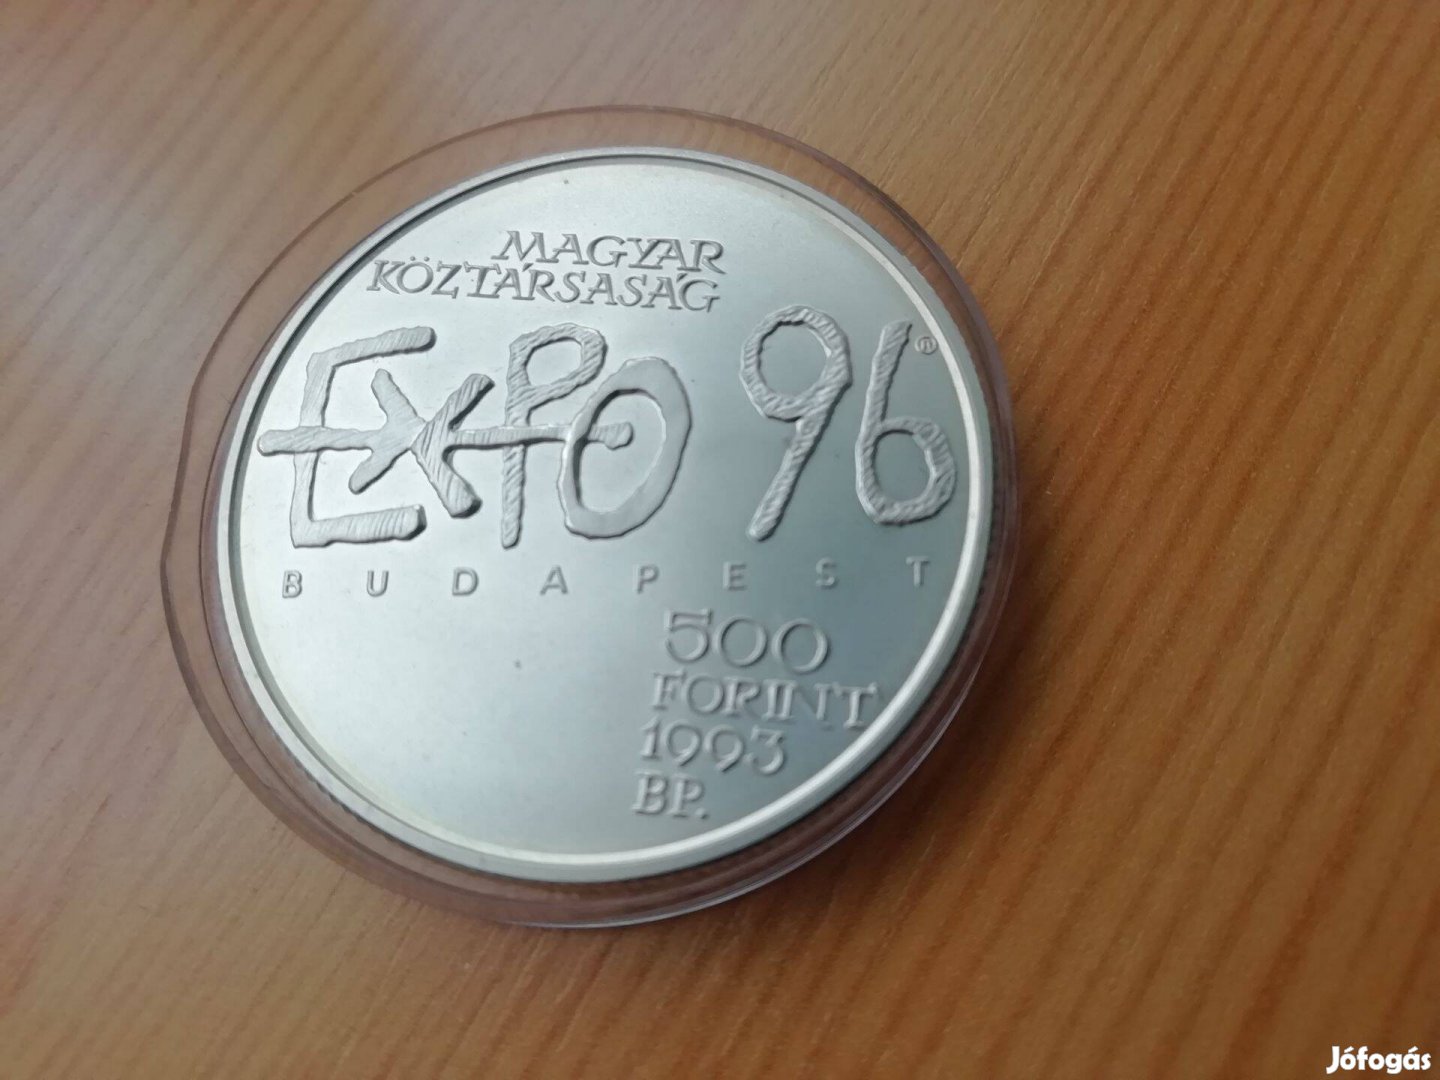 EXPO 96 ezüst 500 Forintos1993-as 31,46 g